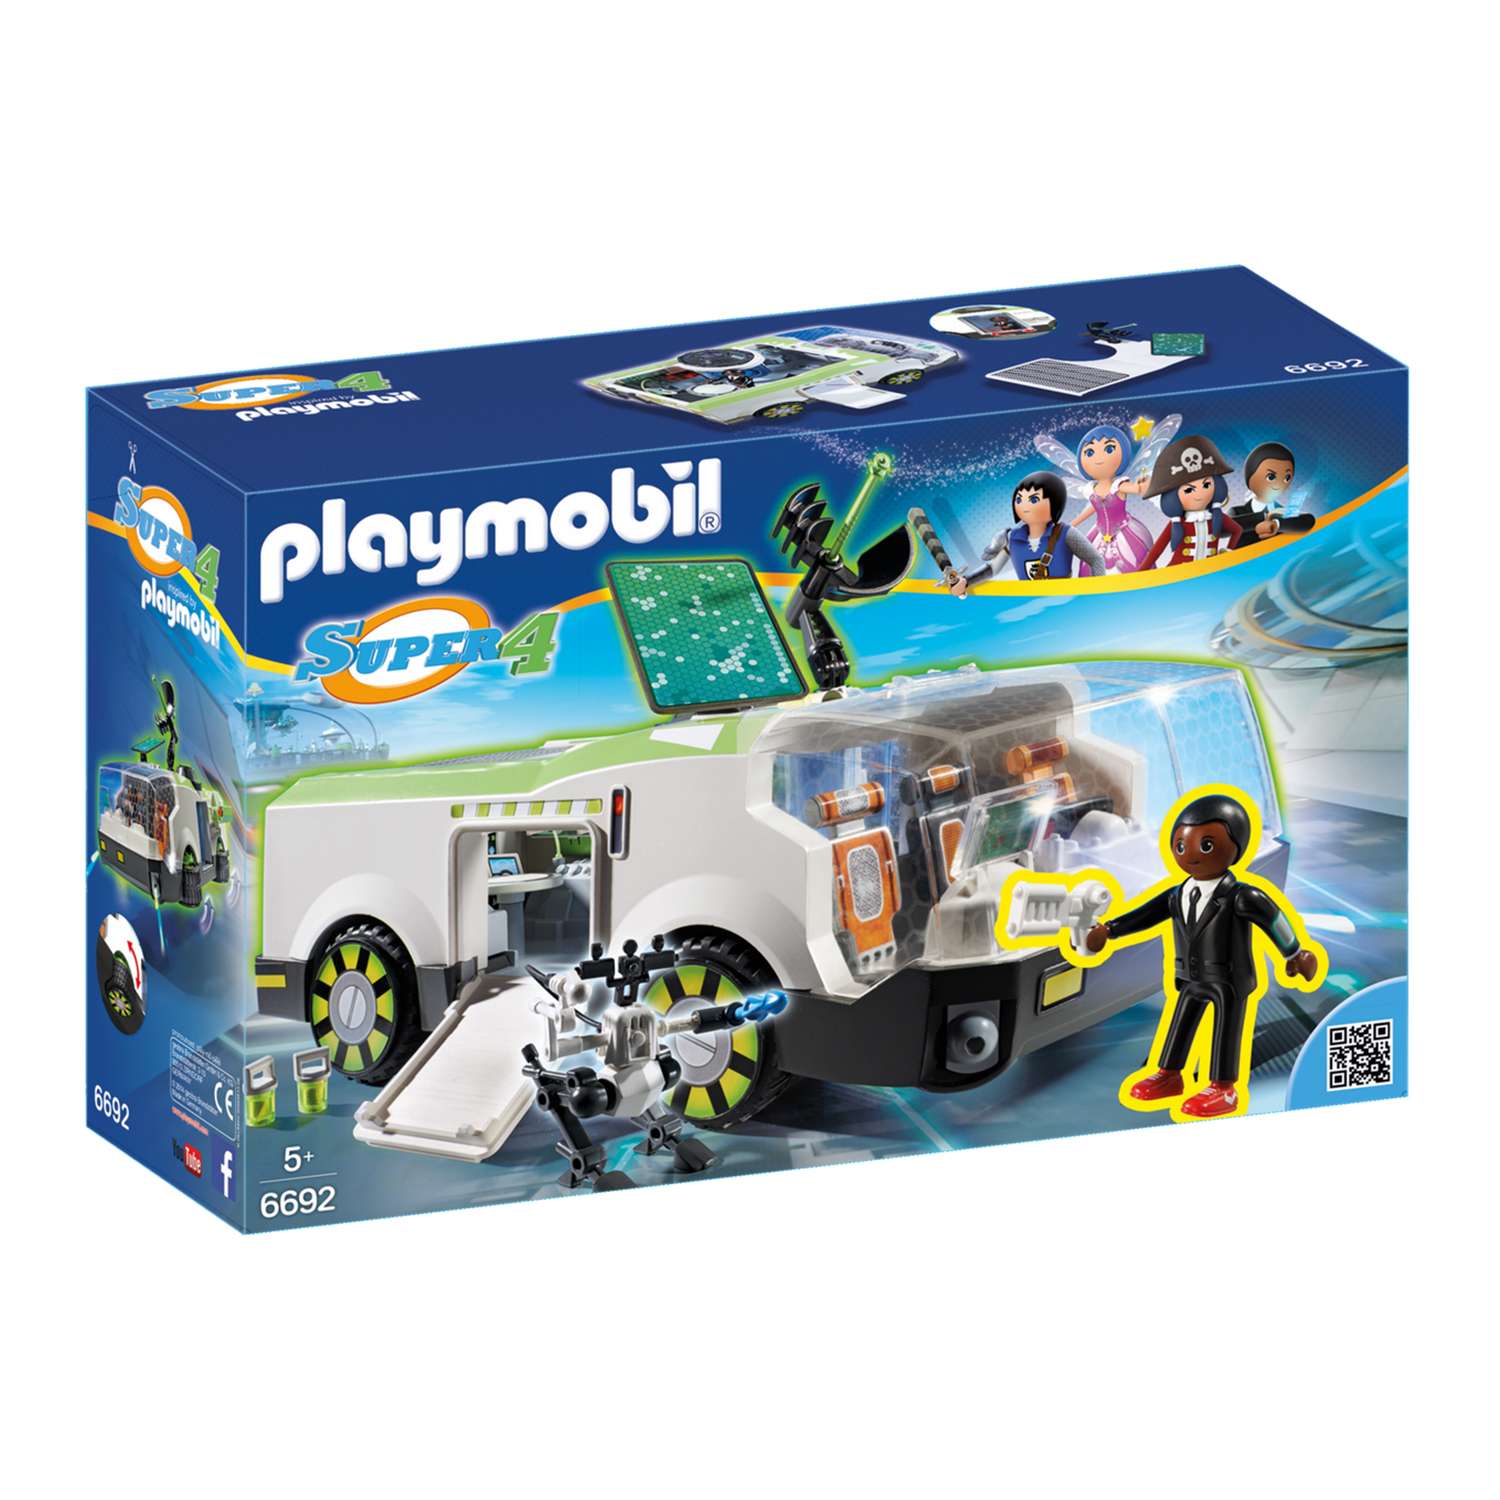 Конструктор Playmobil Супер4. Техно Хамелеон с Джином - фото 2